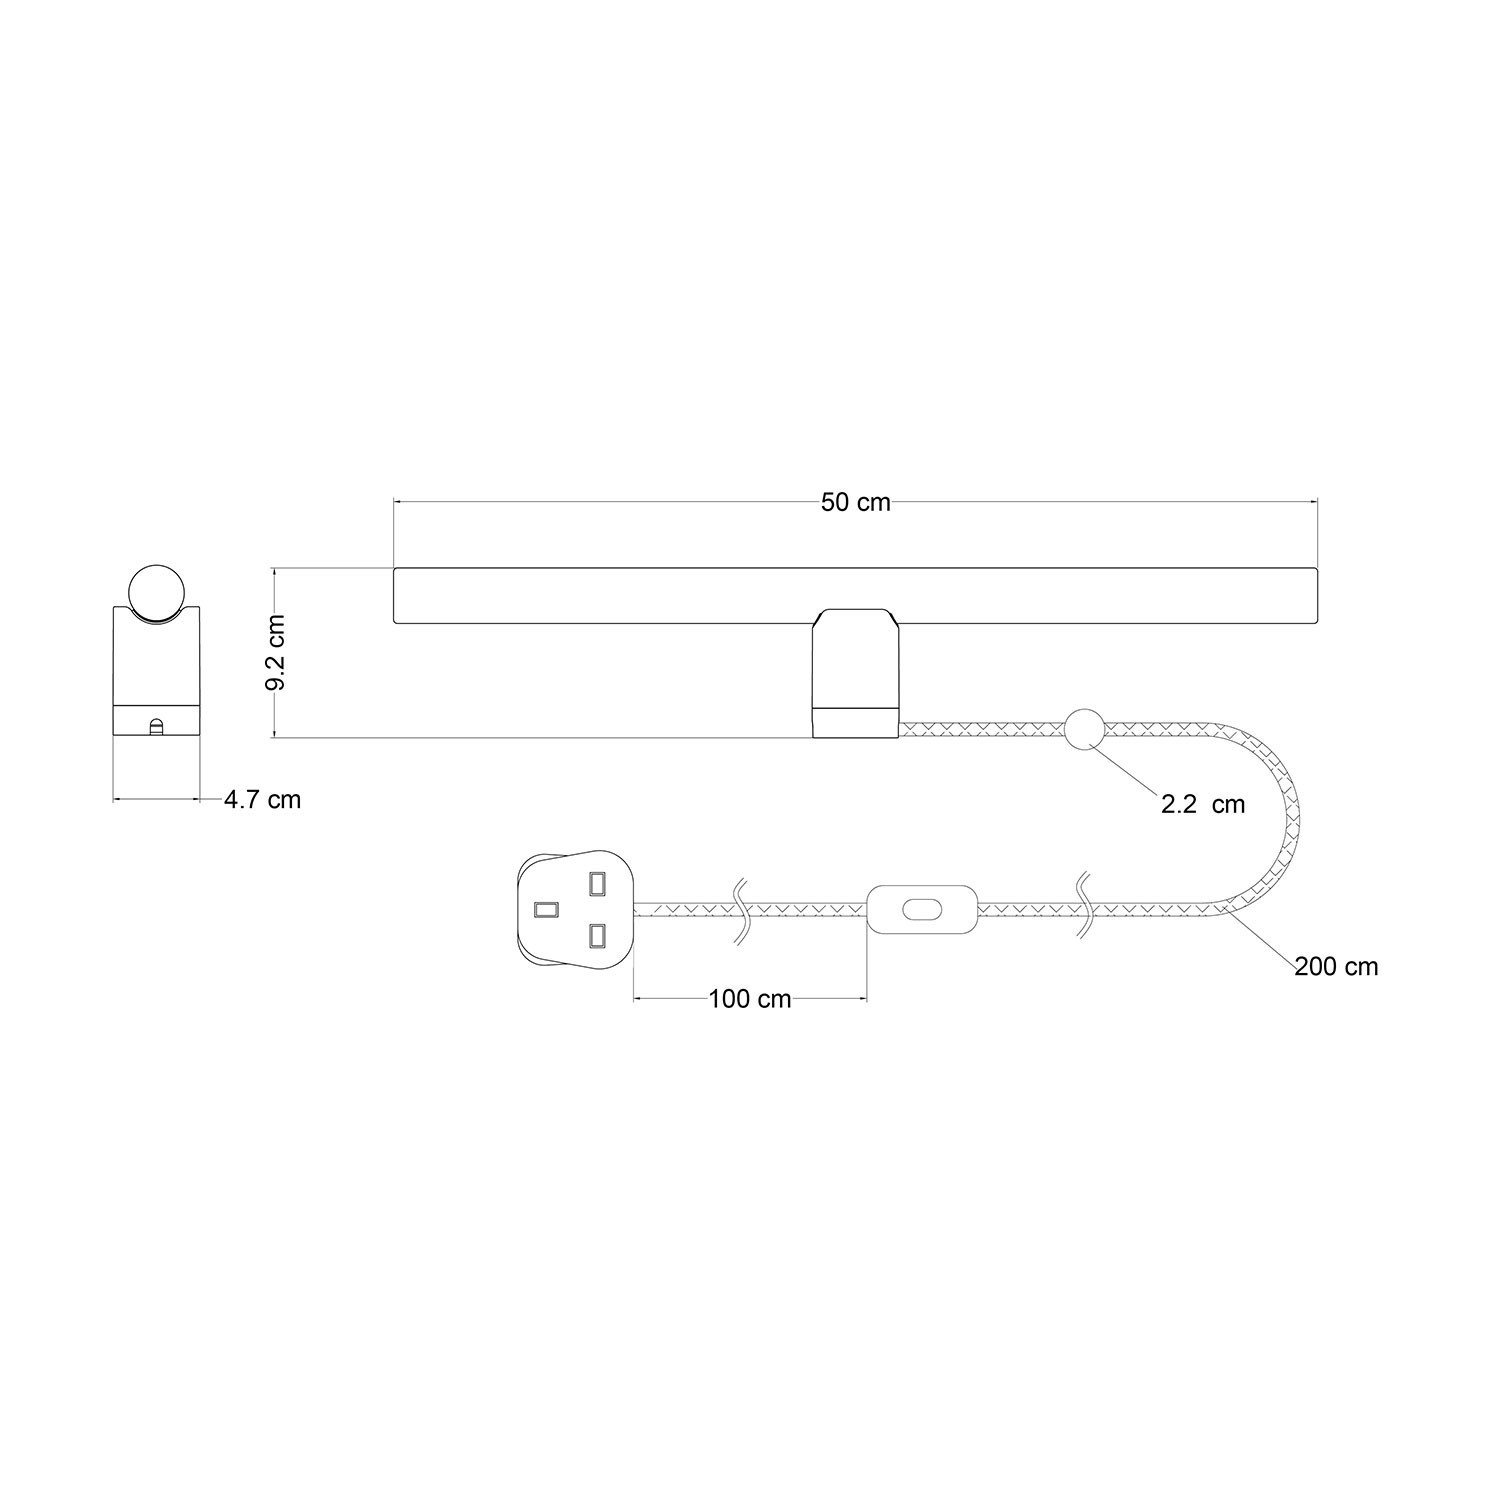 Leuchte Spostaluce esse14 mit S14d Anschluss und UK-Stecker